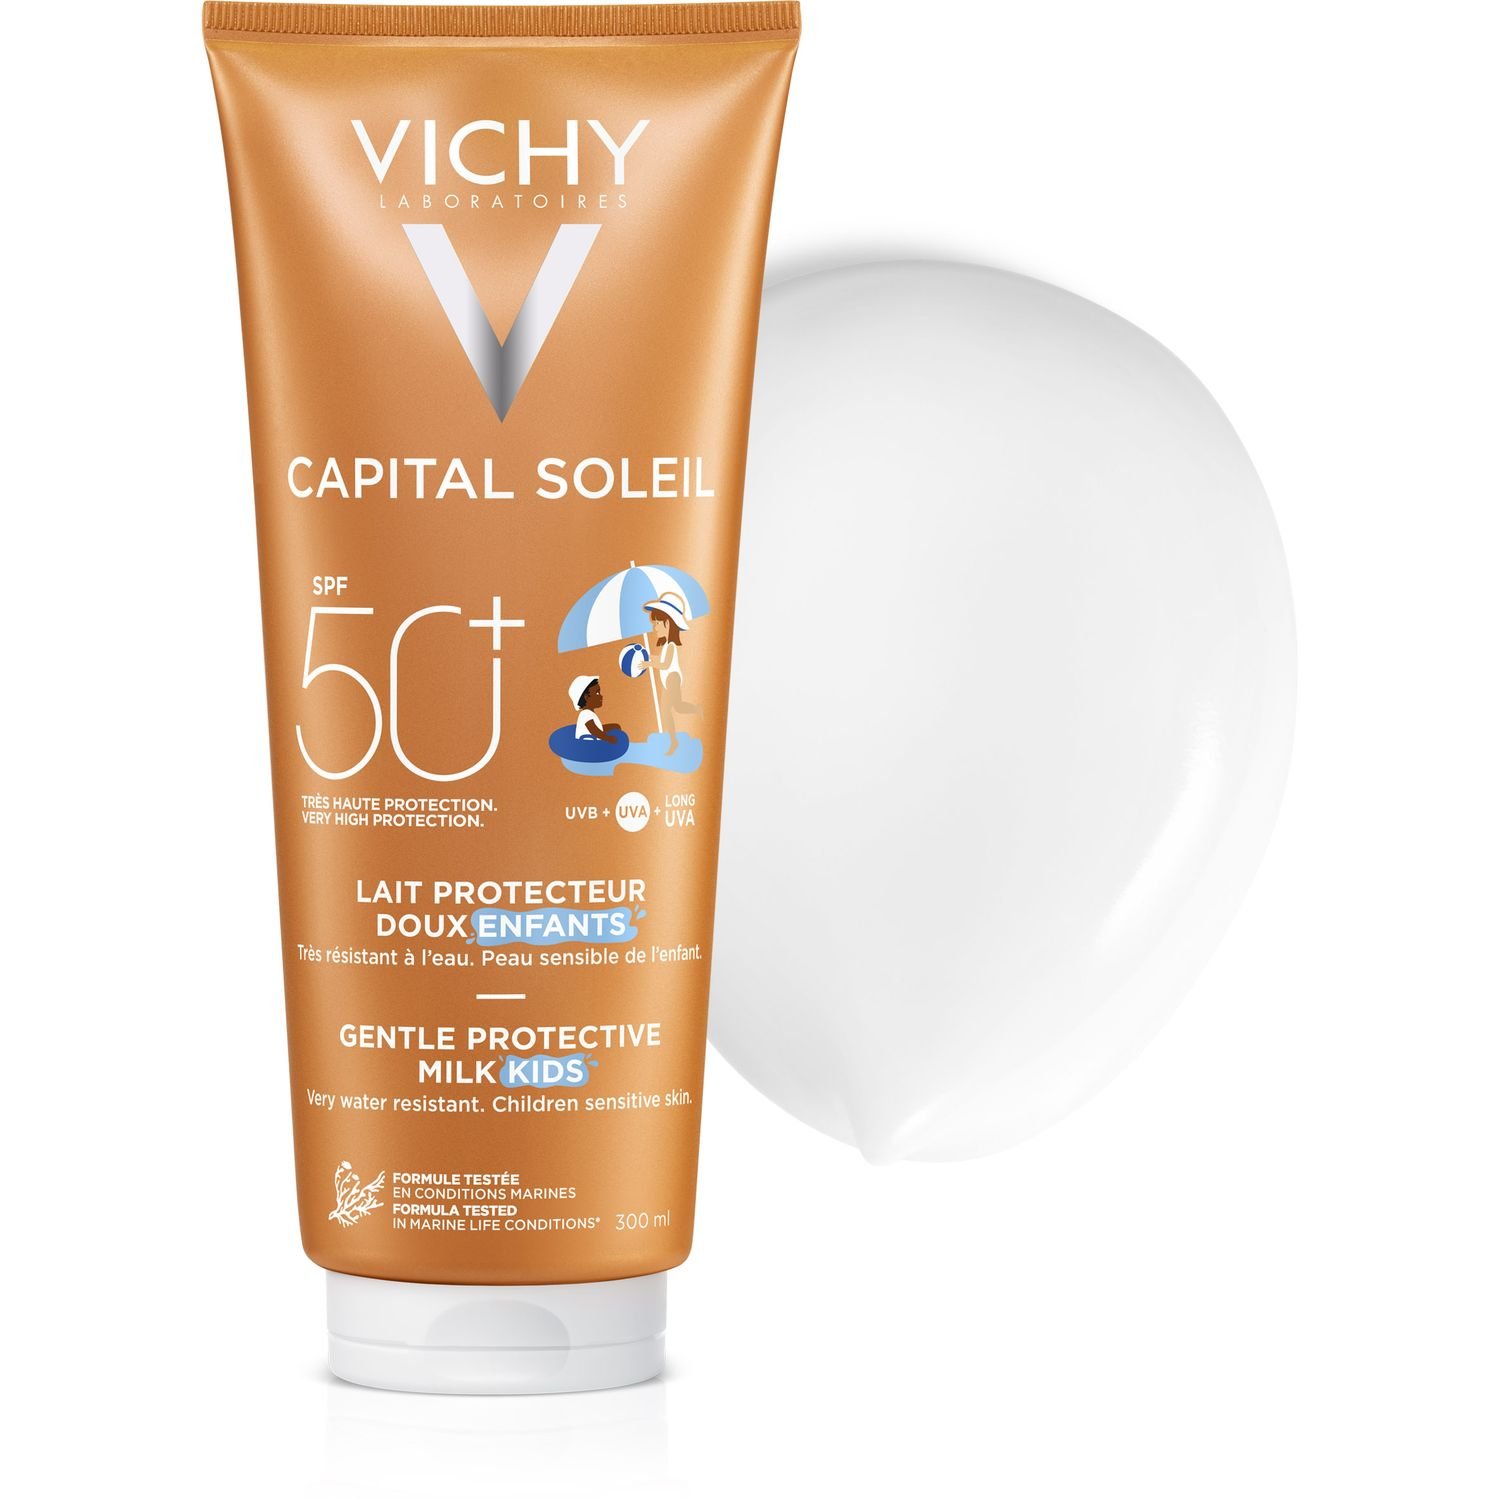 Сонцезахисне водостійке молочко Vichy Capital Soleil Milk для дітей, SPF 50, 300 мл (M4641821) - фото 3